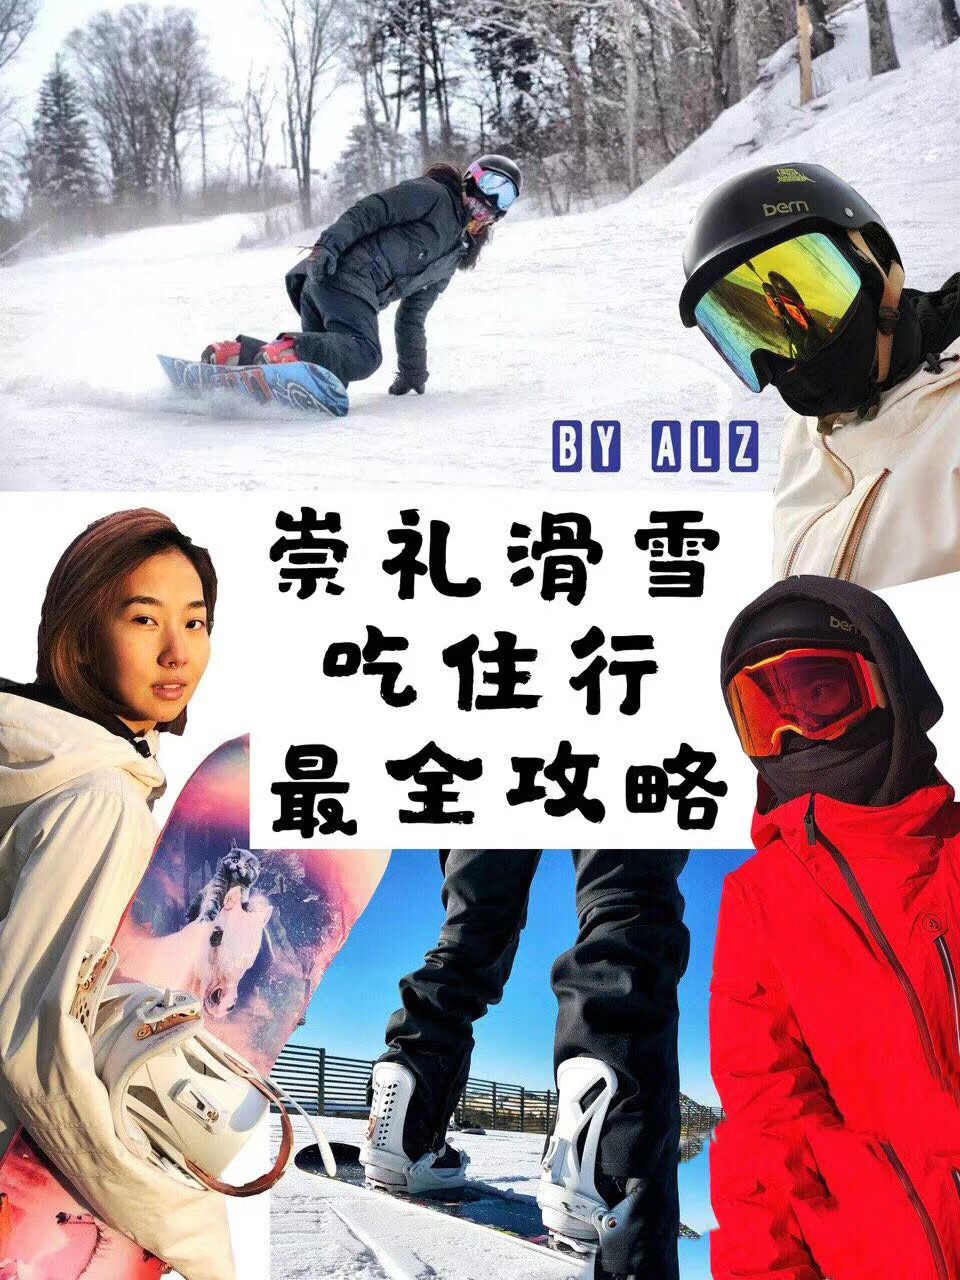 崇礼区位于中国河北省张家口市，是一个著名的滑雪旅游胜地，也是2022年冬奥会雪上项目的举办地之一。这